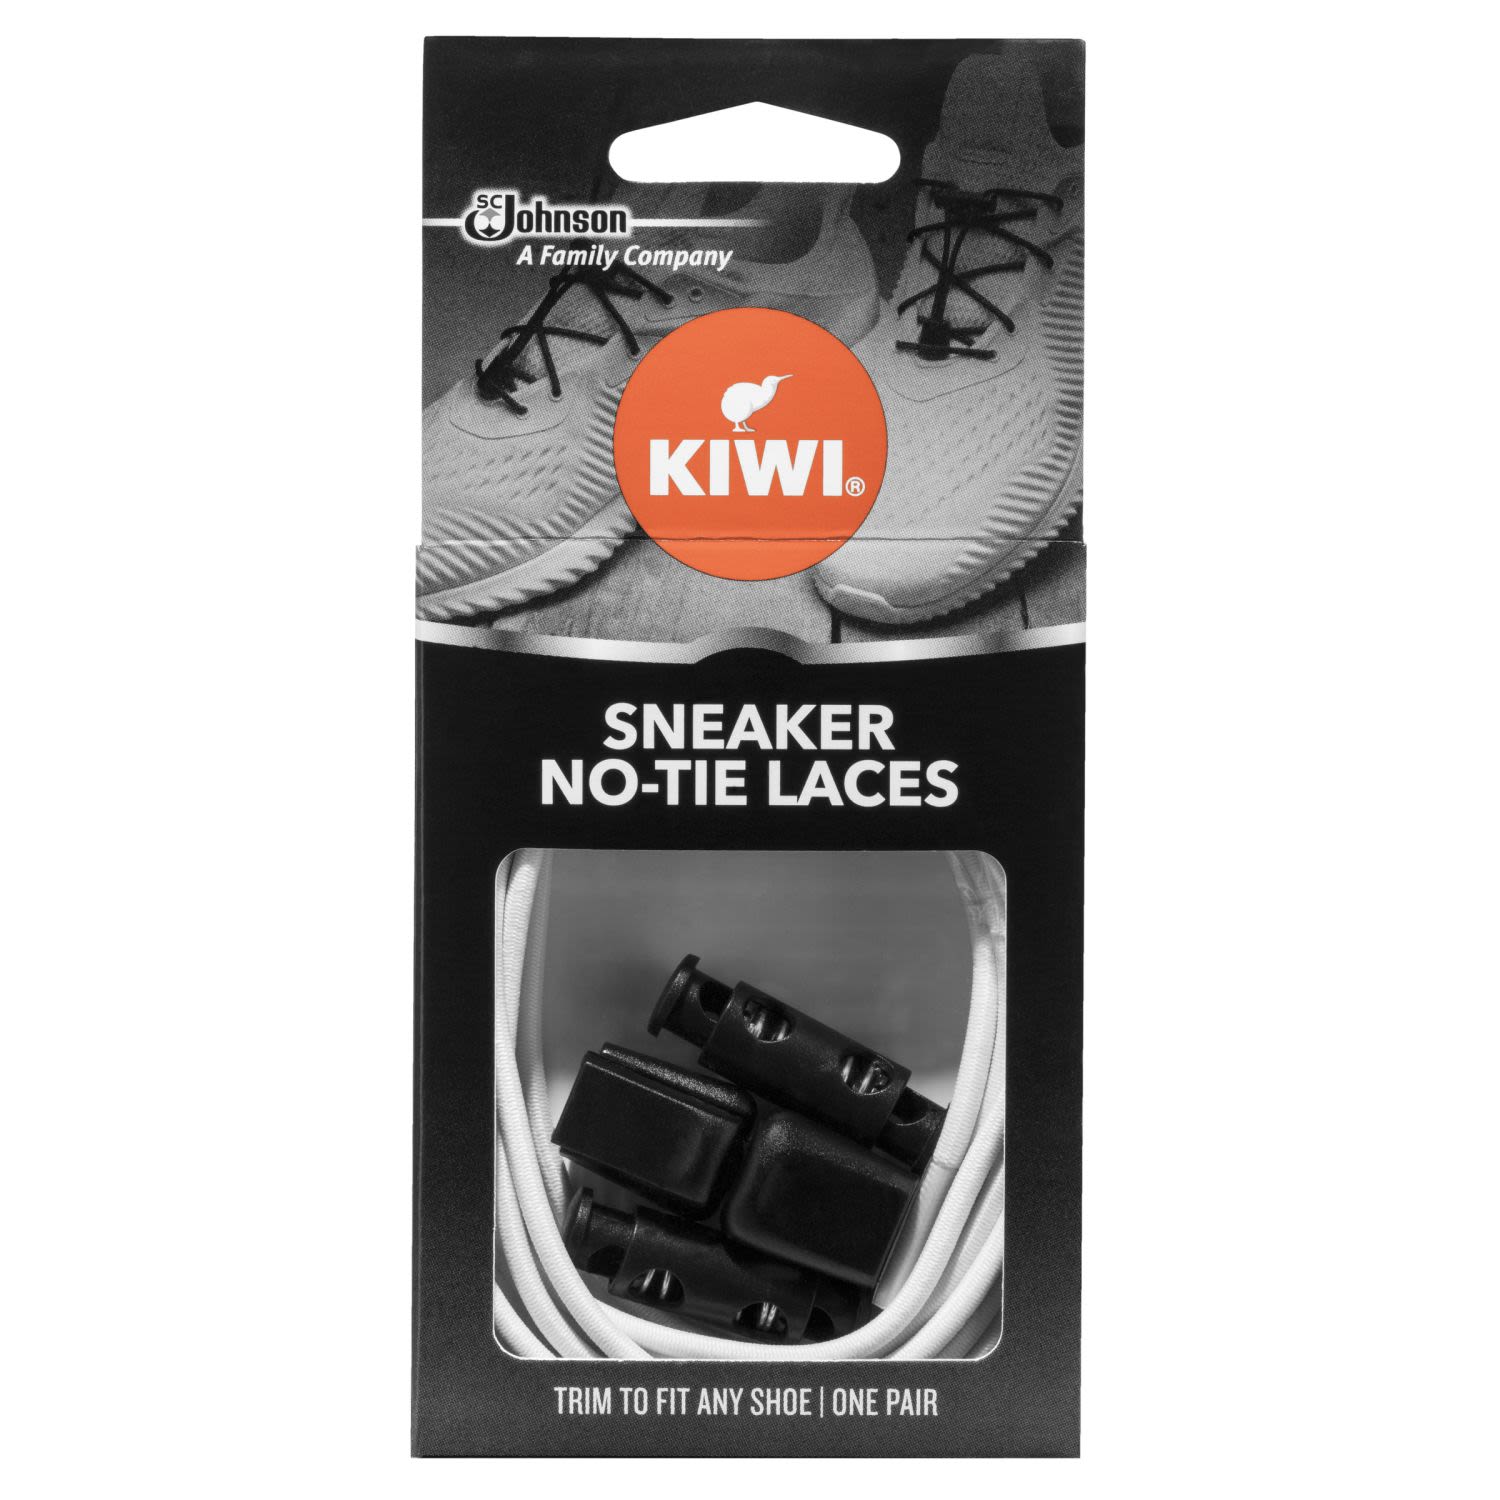 Kiwi Sneaker No Tie Laces White One Pair, 1 Each